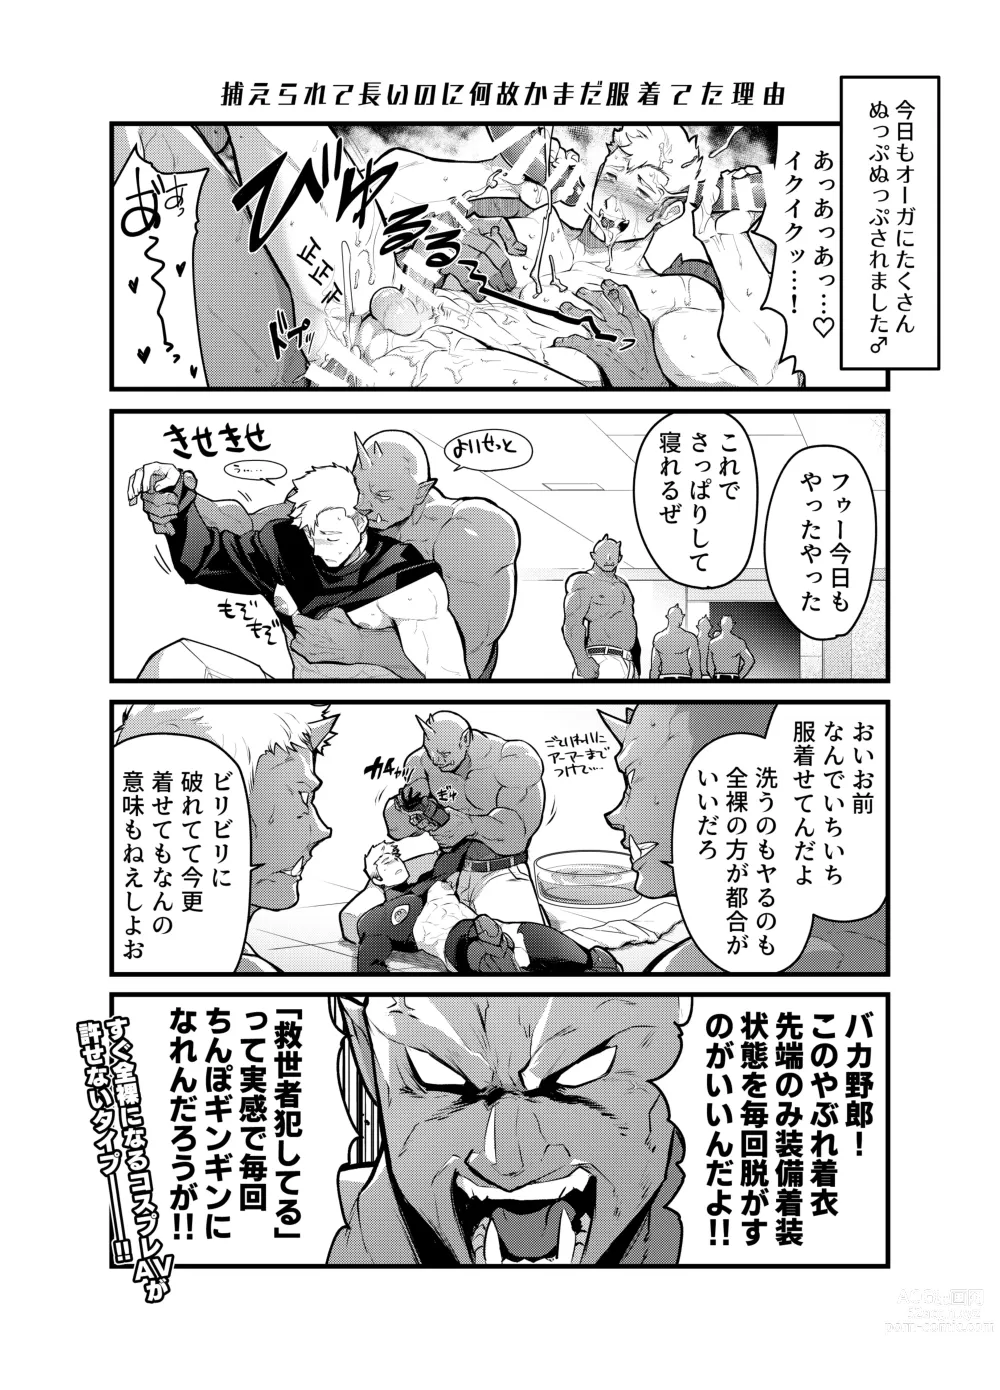 Page 16 of doujinshi Bangai